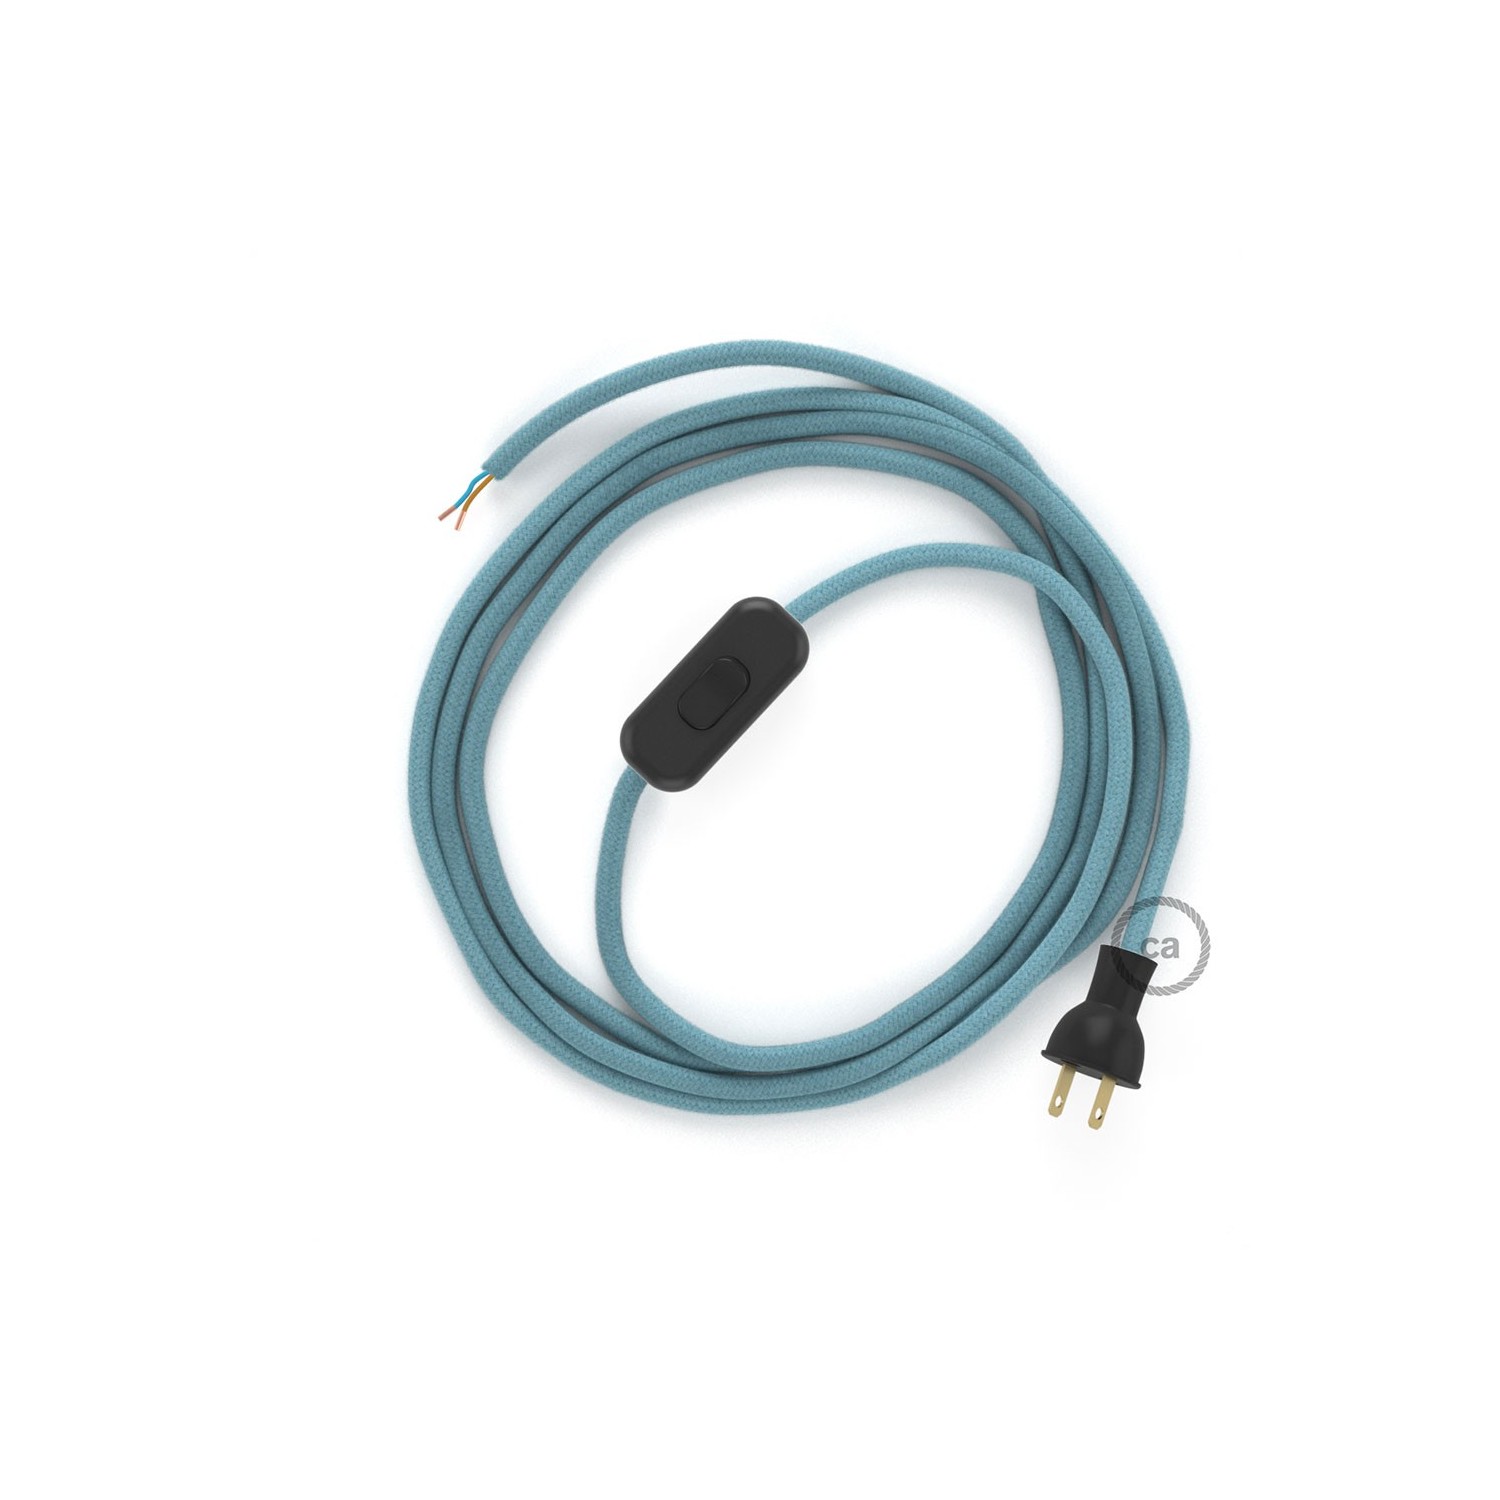 Cableado para lámpara de mesa, cable RC53 Algodón Oceano 1,8 m. Elige el color de la clavija y del interruptor!